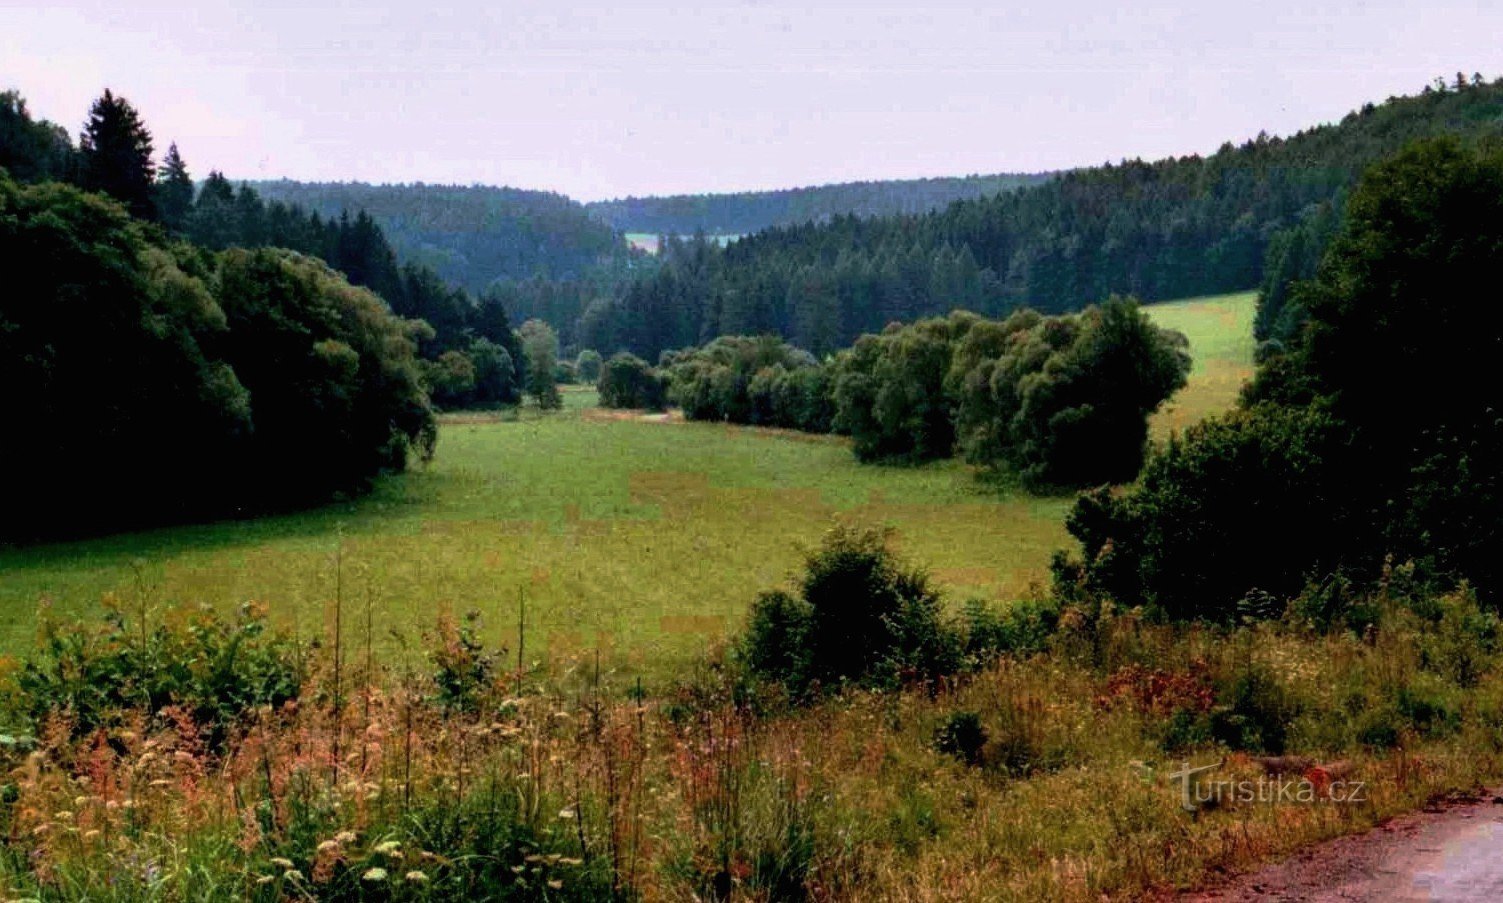 vägen till Javoříčky-grottorna